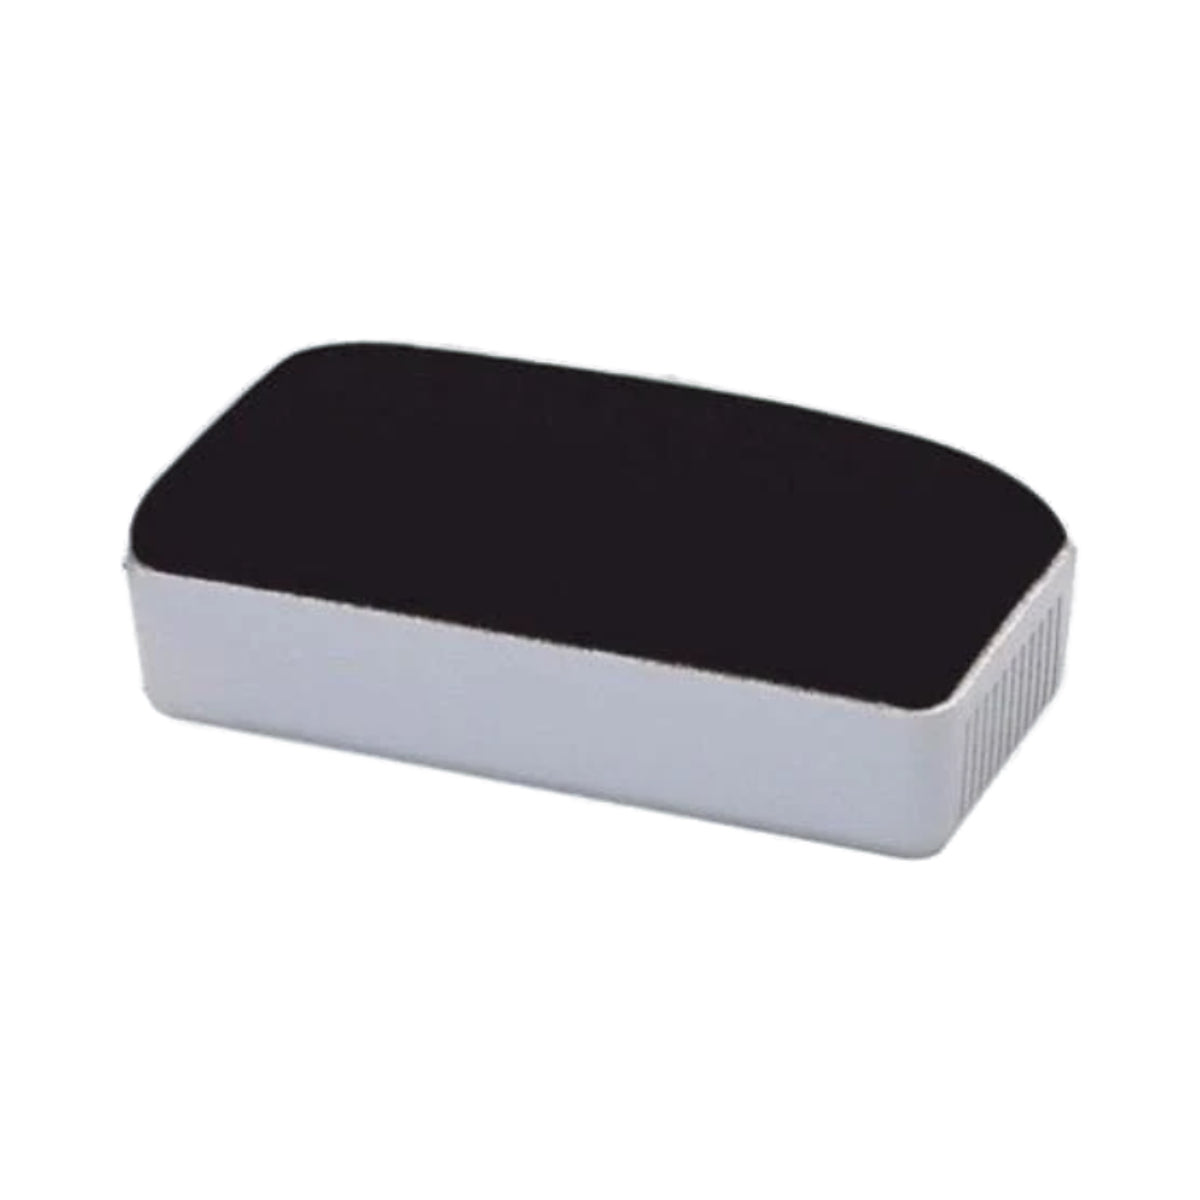 deli White Board Non-Magnetic Eraser 110 x 50 mm, Assorted Colors